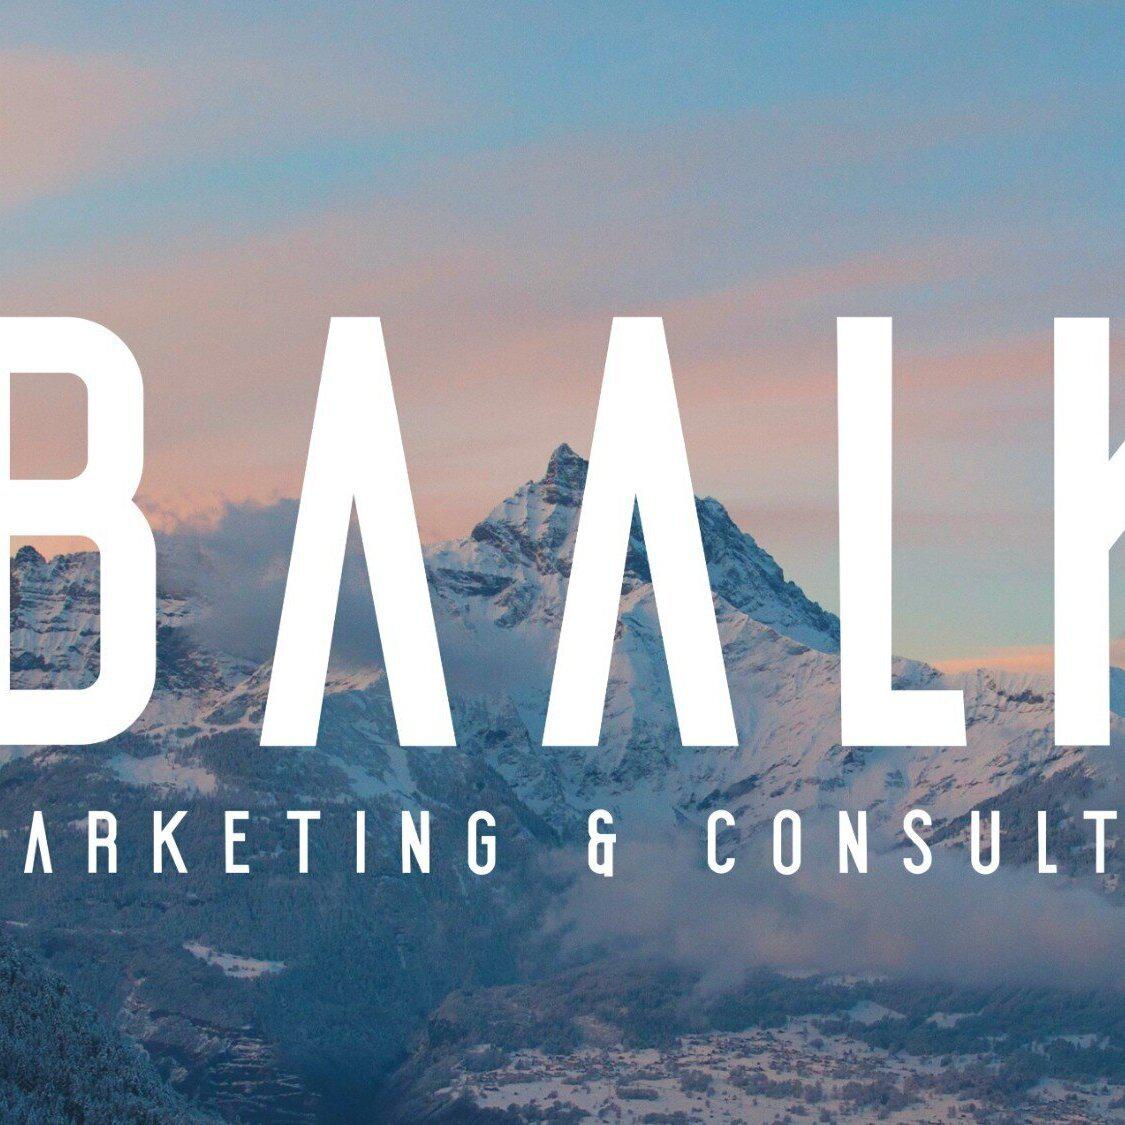 Marketingbude - Baalk Marketing & Consulting UG (Haftungsbeschränkt), Torneestraße 19 in Lilienthal